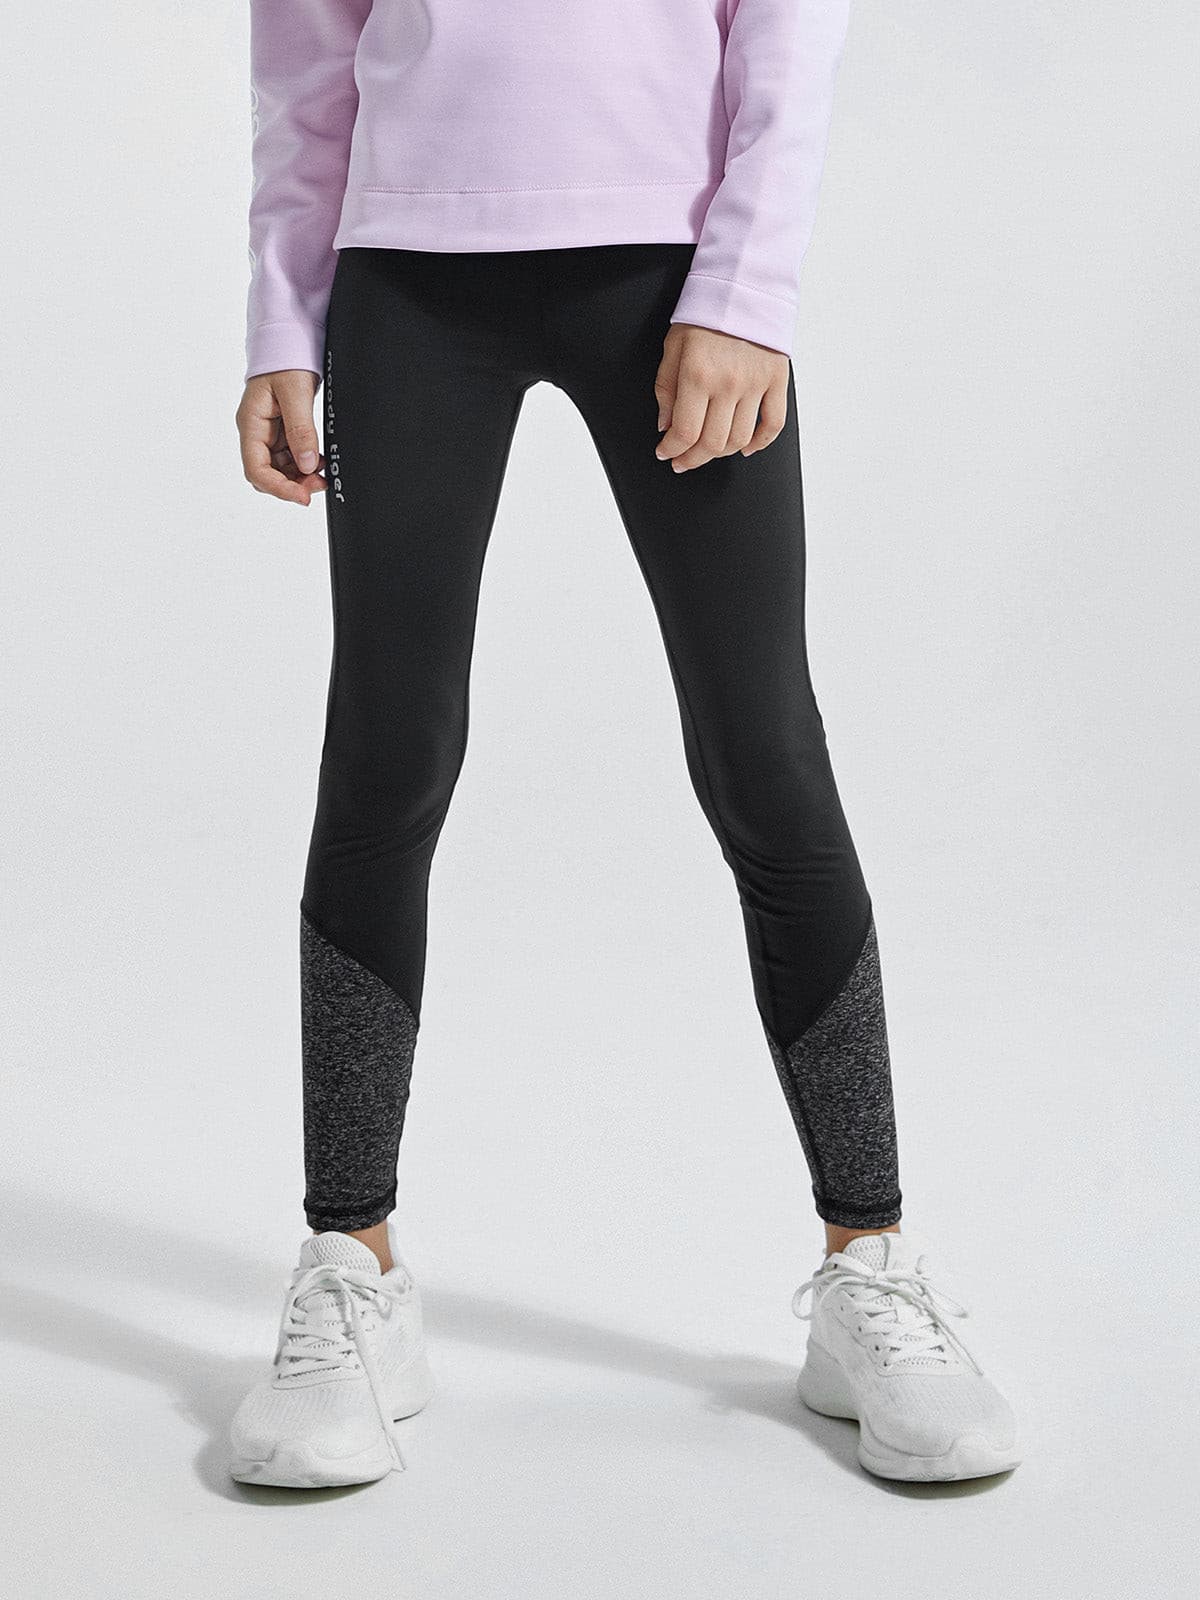 Buy Nike Women's Dri-FIT Pro Hypercool Leggings Black in KSA -SSS